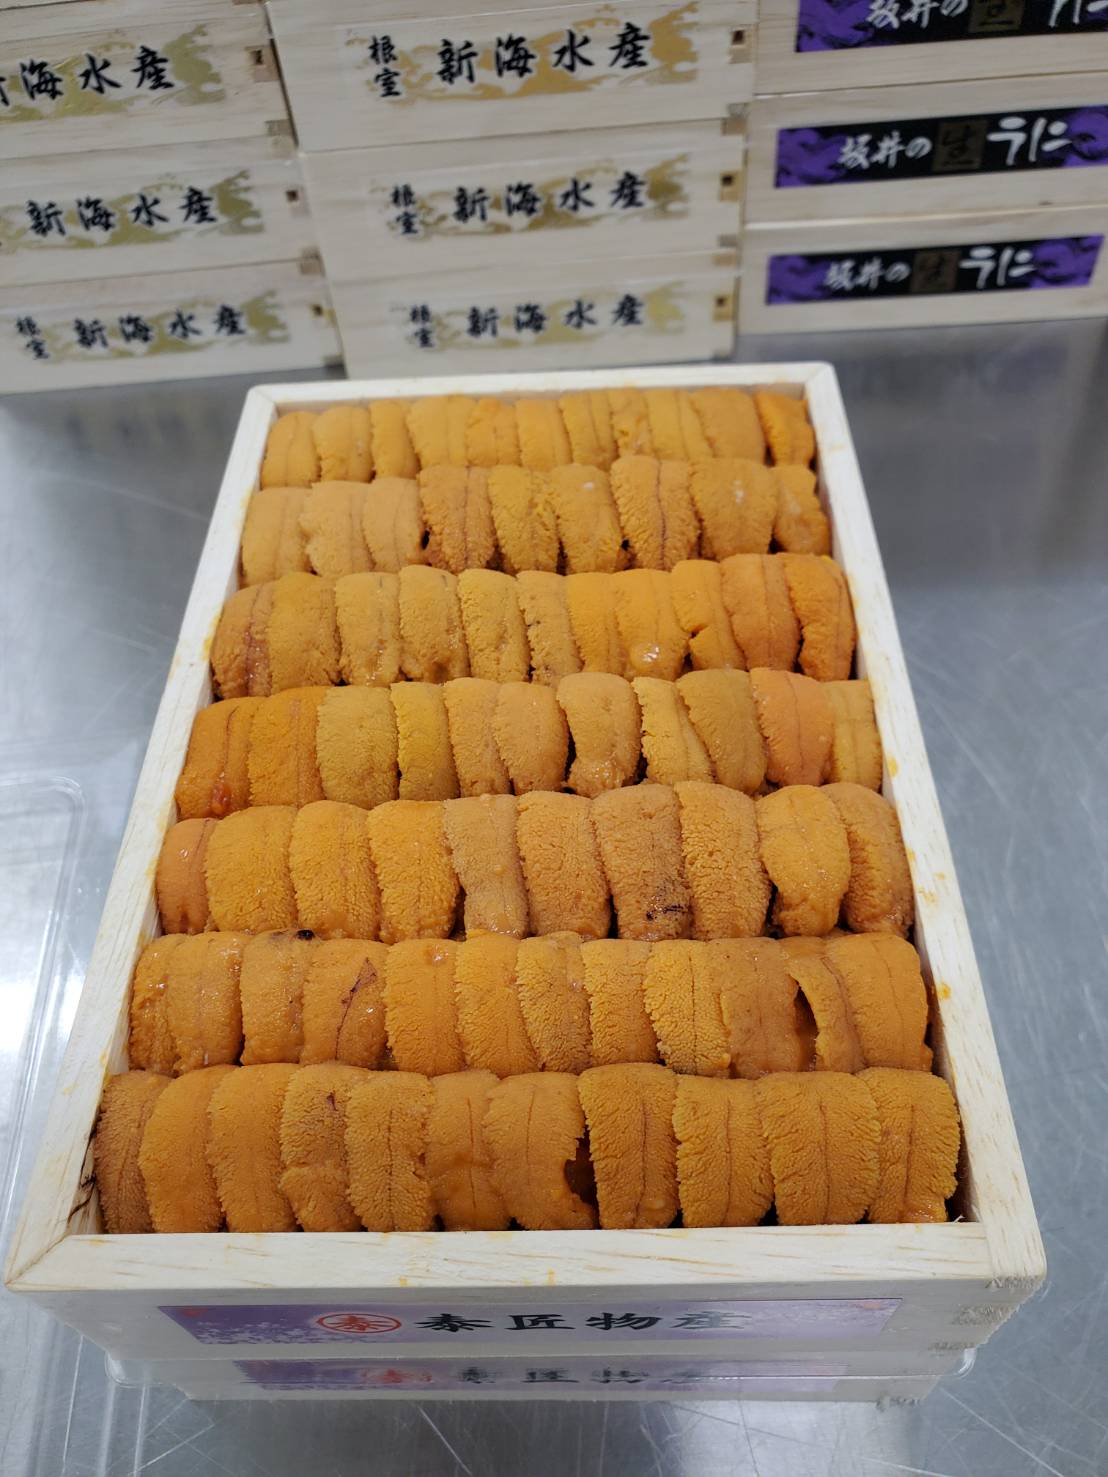 Uni Red Sea Urchin Med Premium from Hokkaido250g box 豊洲直送!北海道産生うに